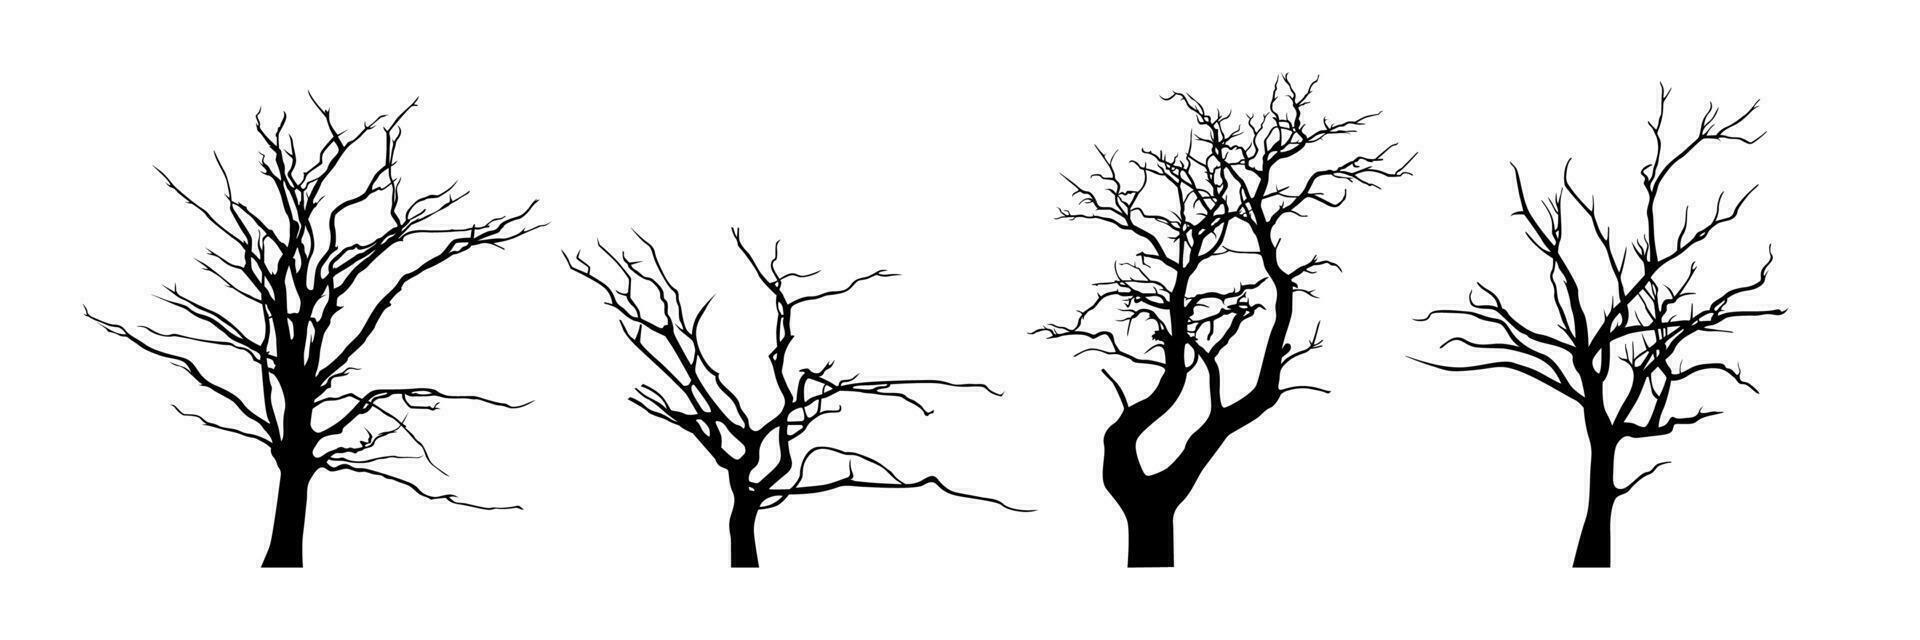 olika död- träd silhuett samling vektor